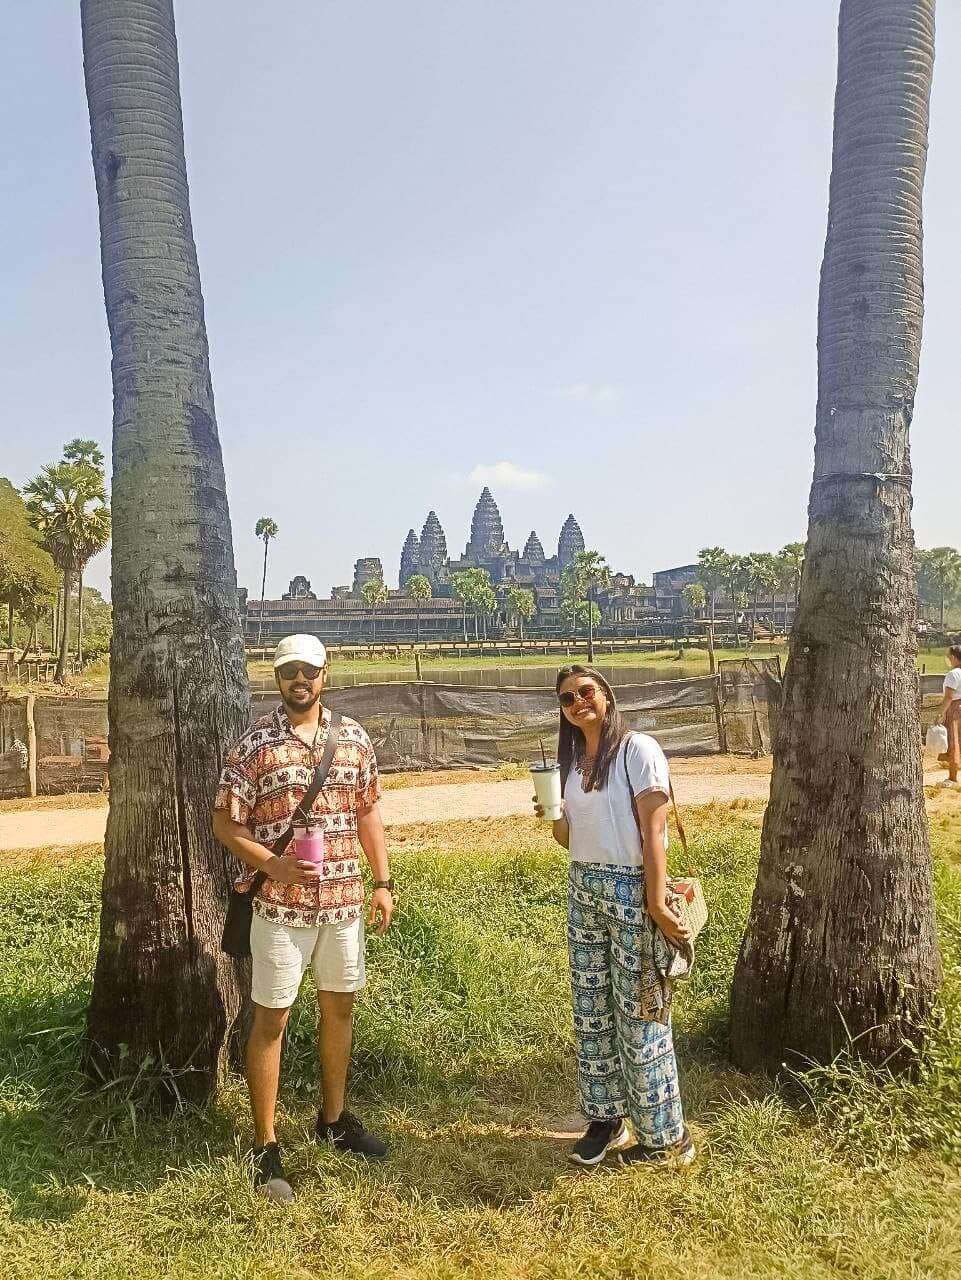 vietnam-laos-cambodia-tour-21-days-siem-reap-angkor-wat-3.jpeg